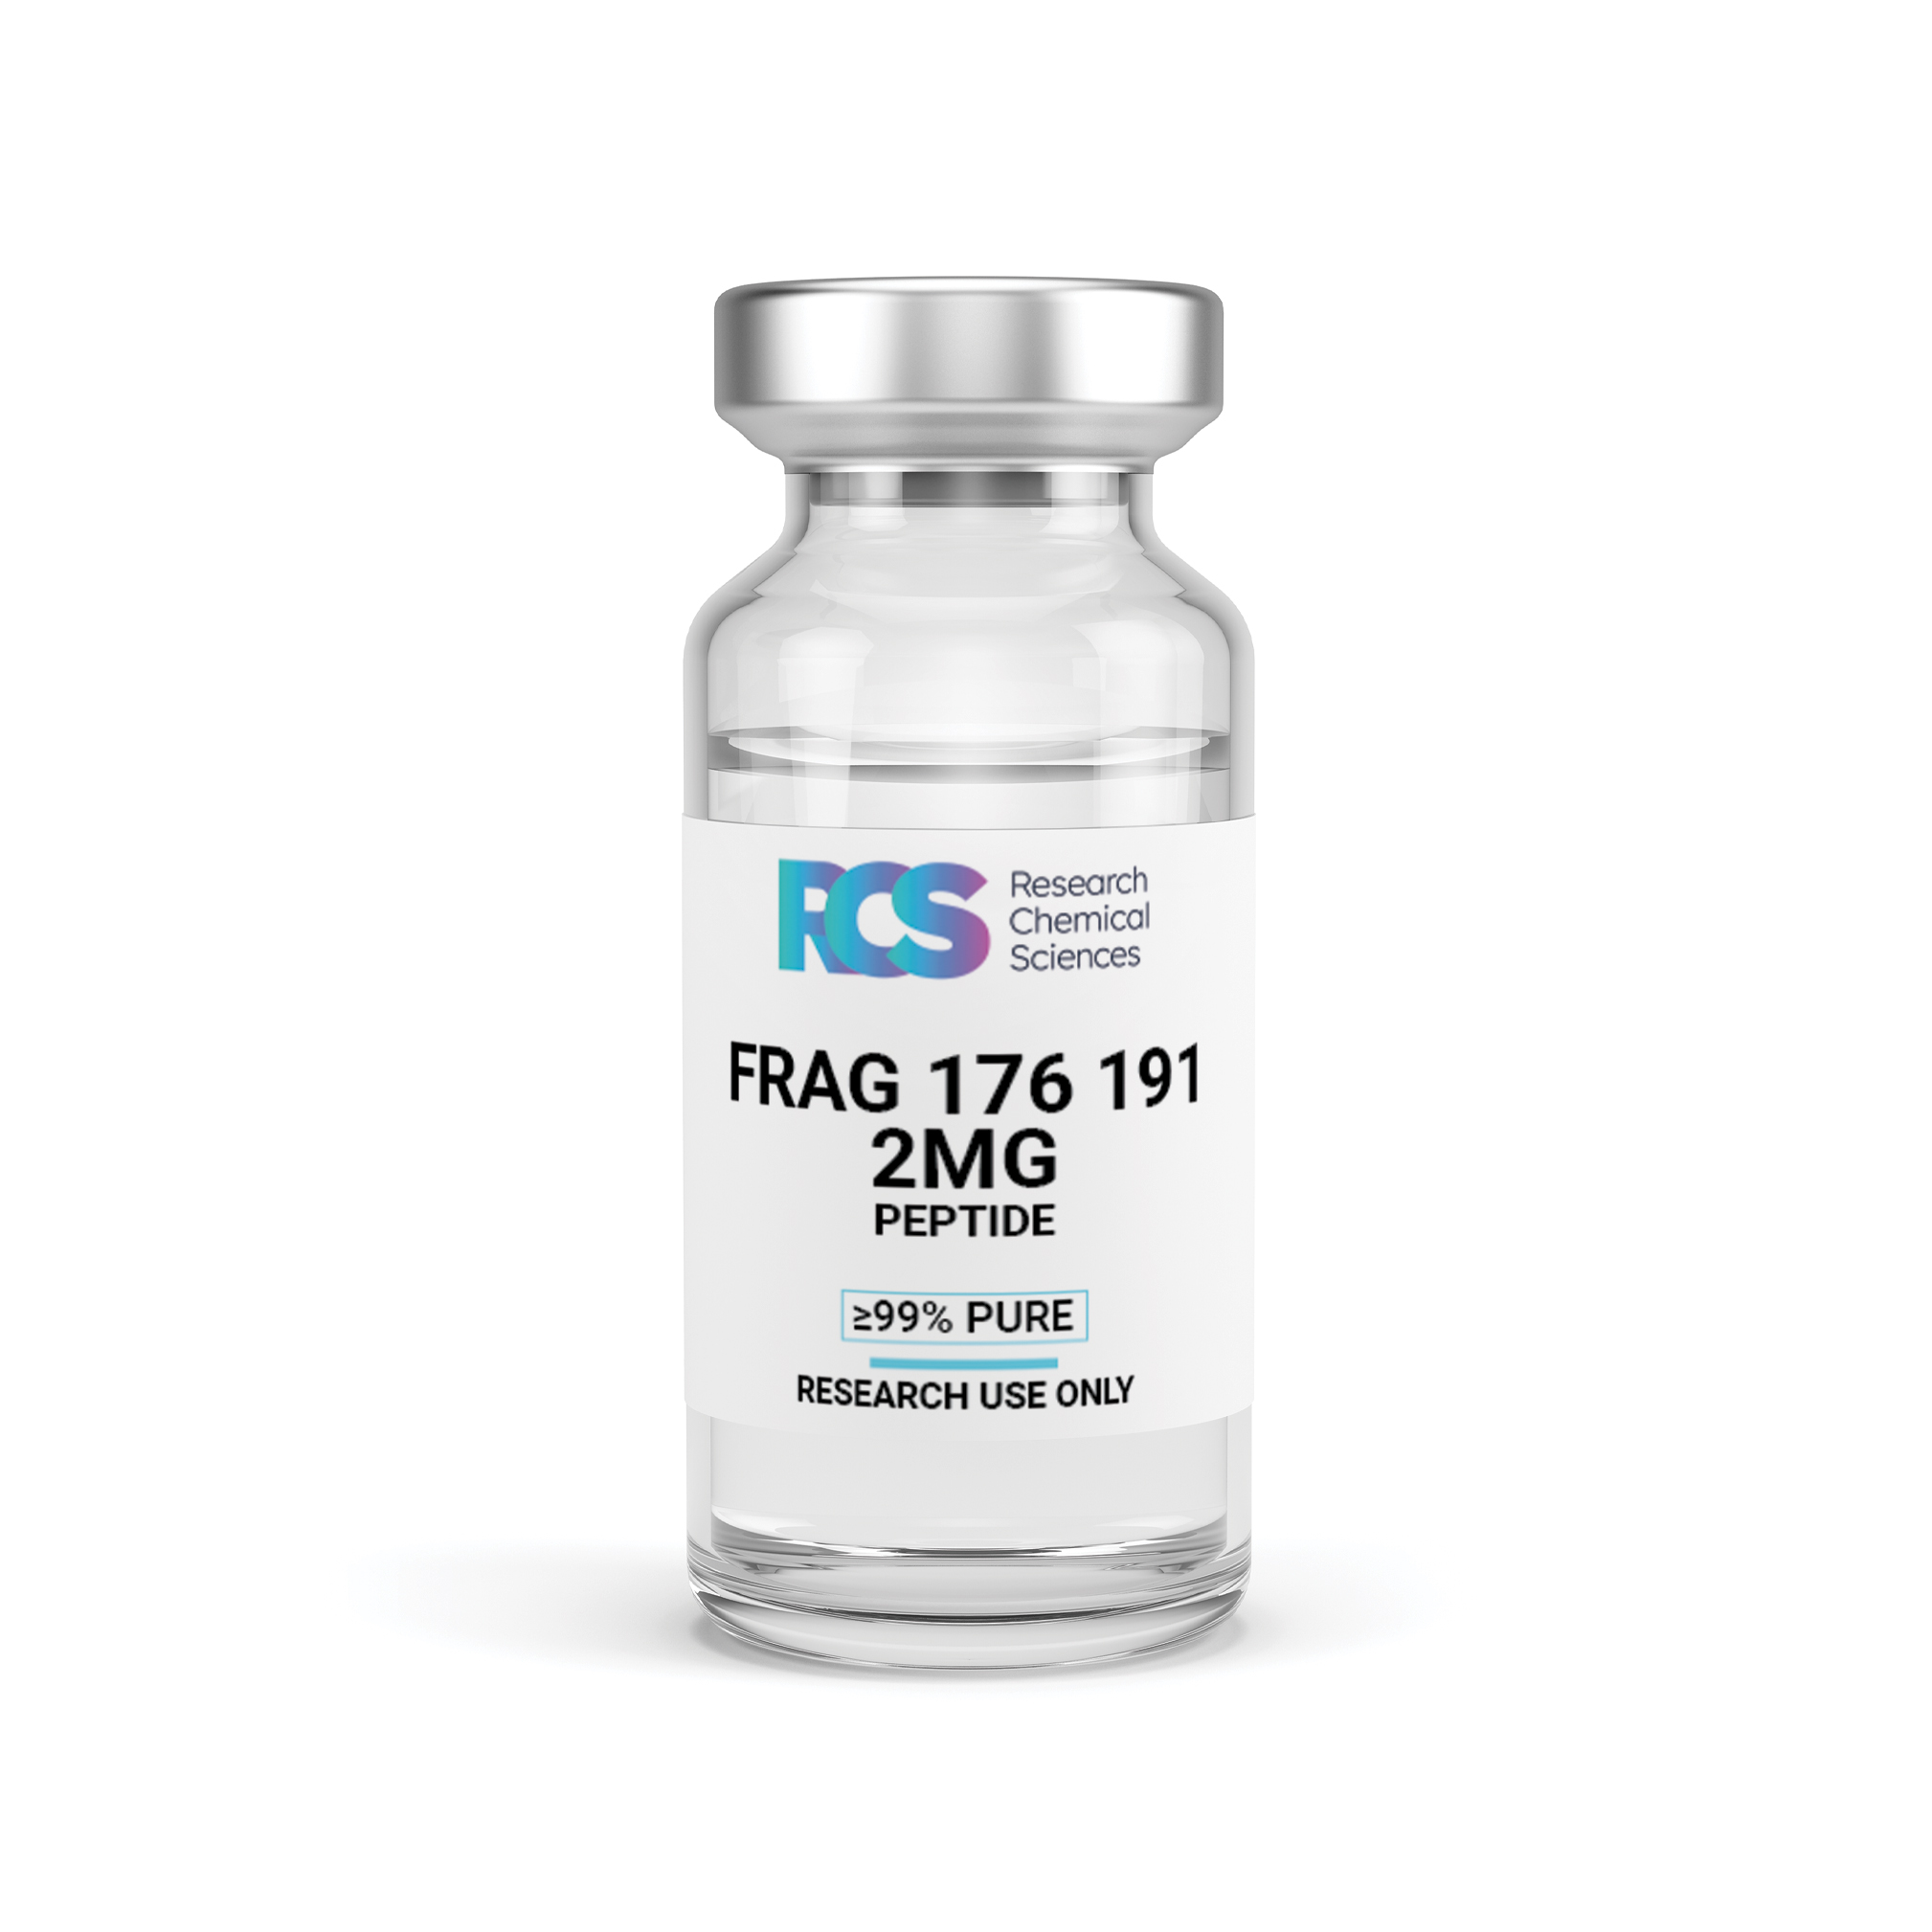 RCS-Frag-176-191-Peptide-2MG-Side-1